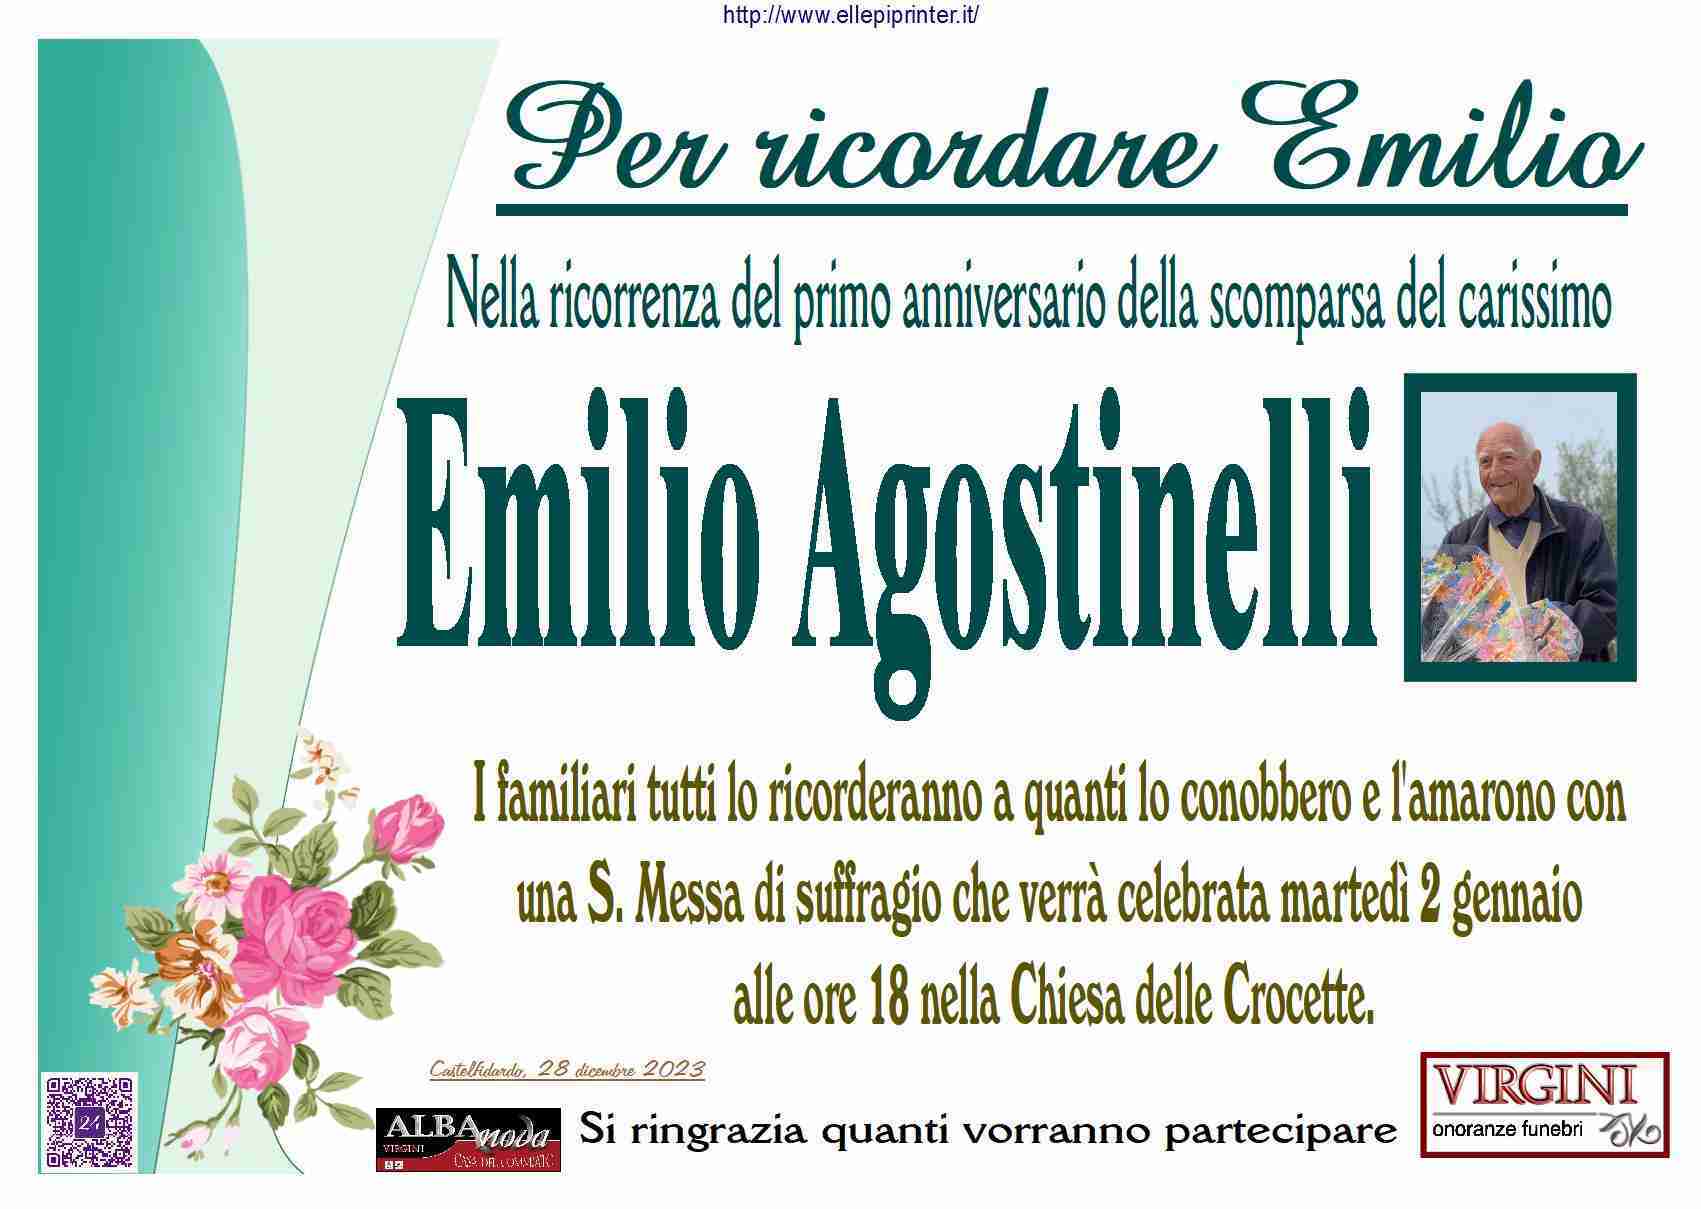 Emilio Agostinelli